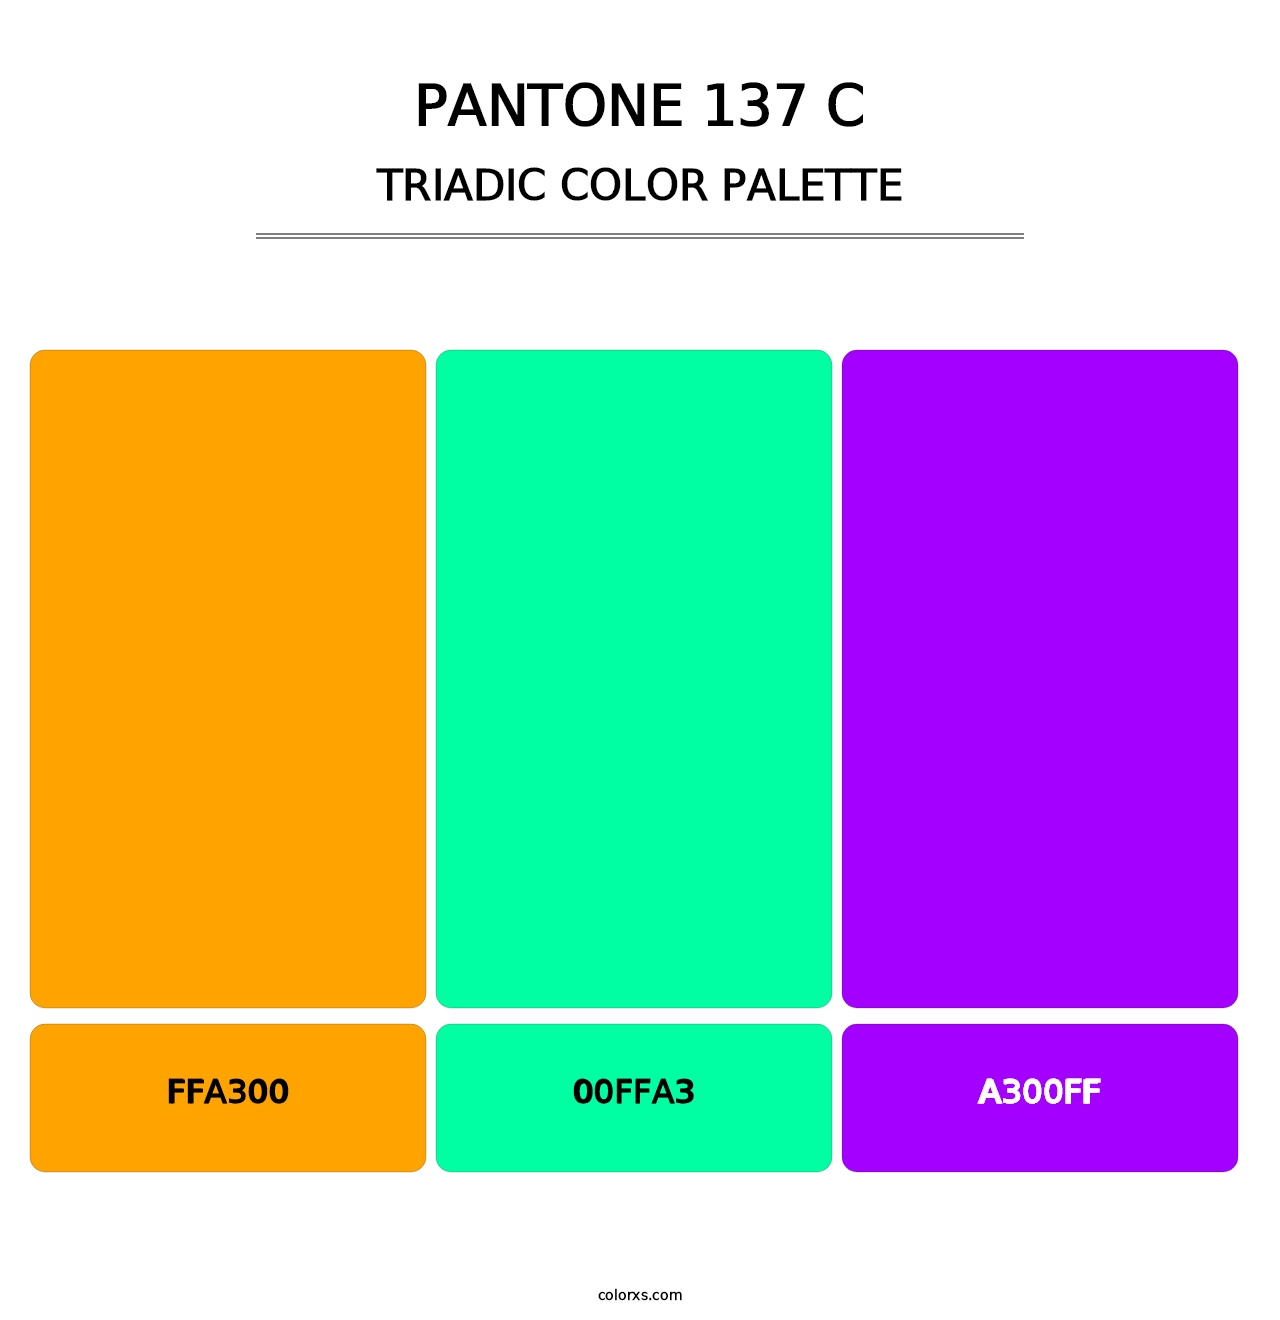 PANTONE 137 C - Triadic Color Palette